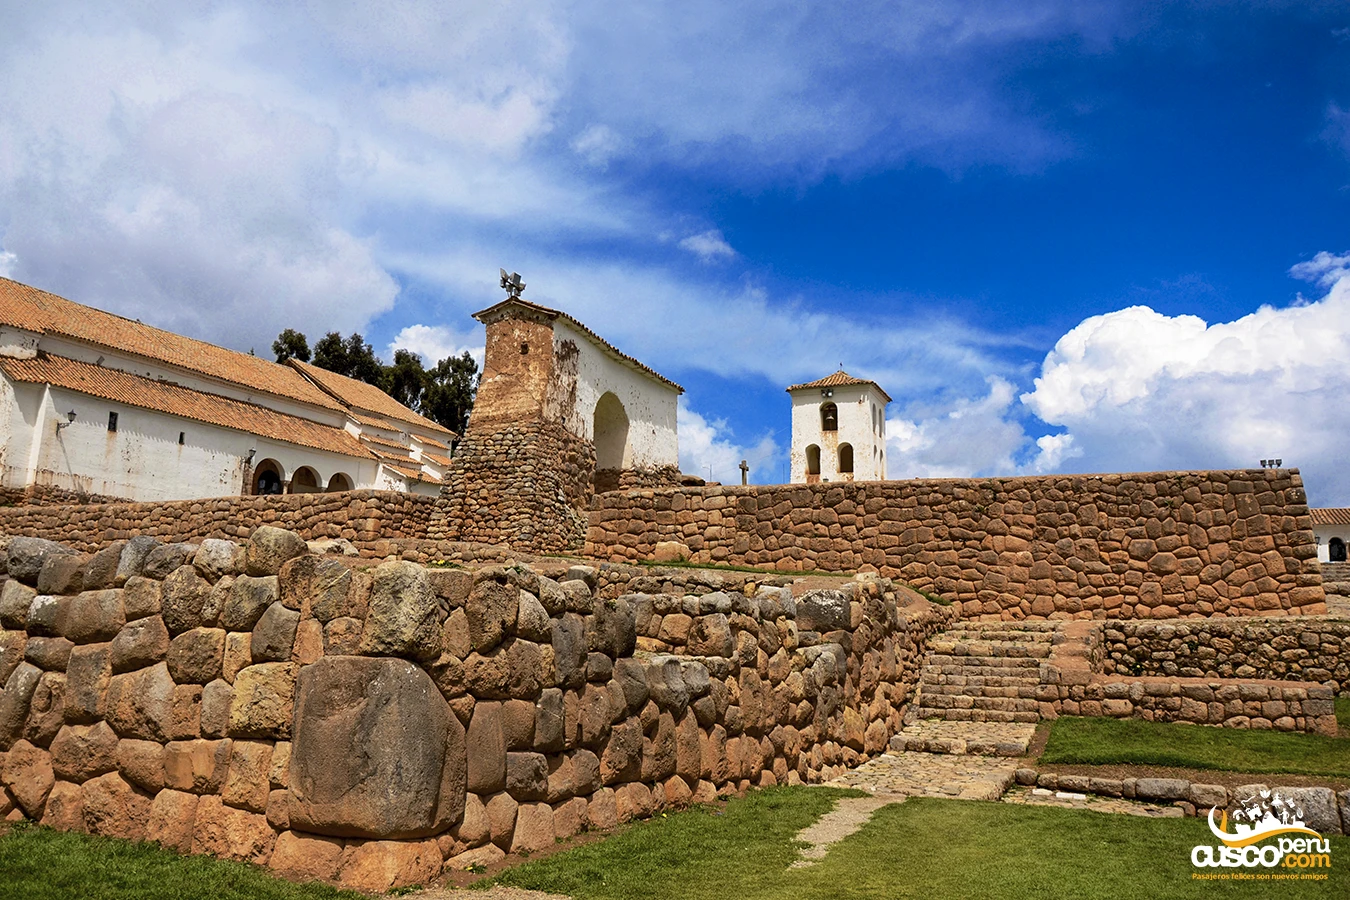 Centro Arqueológico De Chinchero. Fonte: CuscoPeru.com